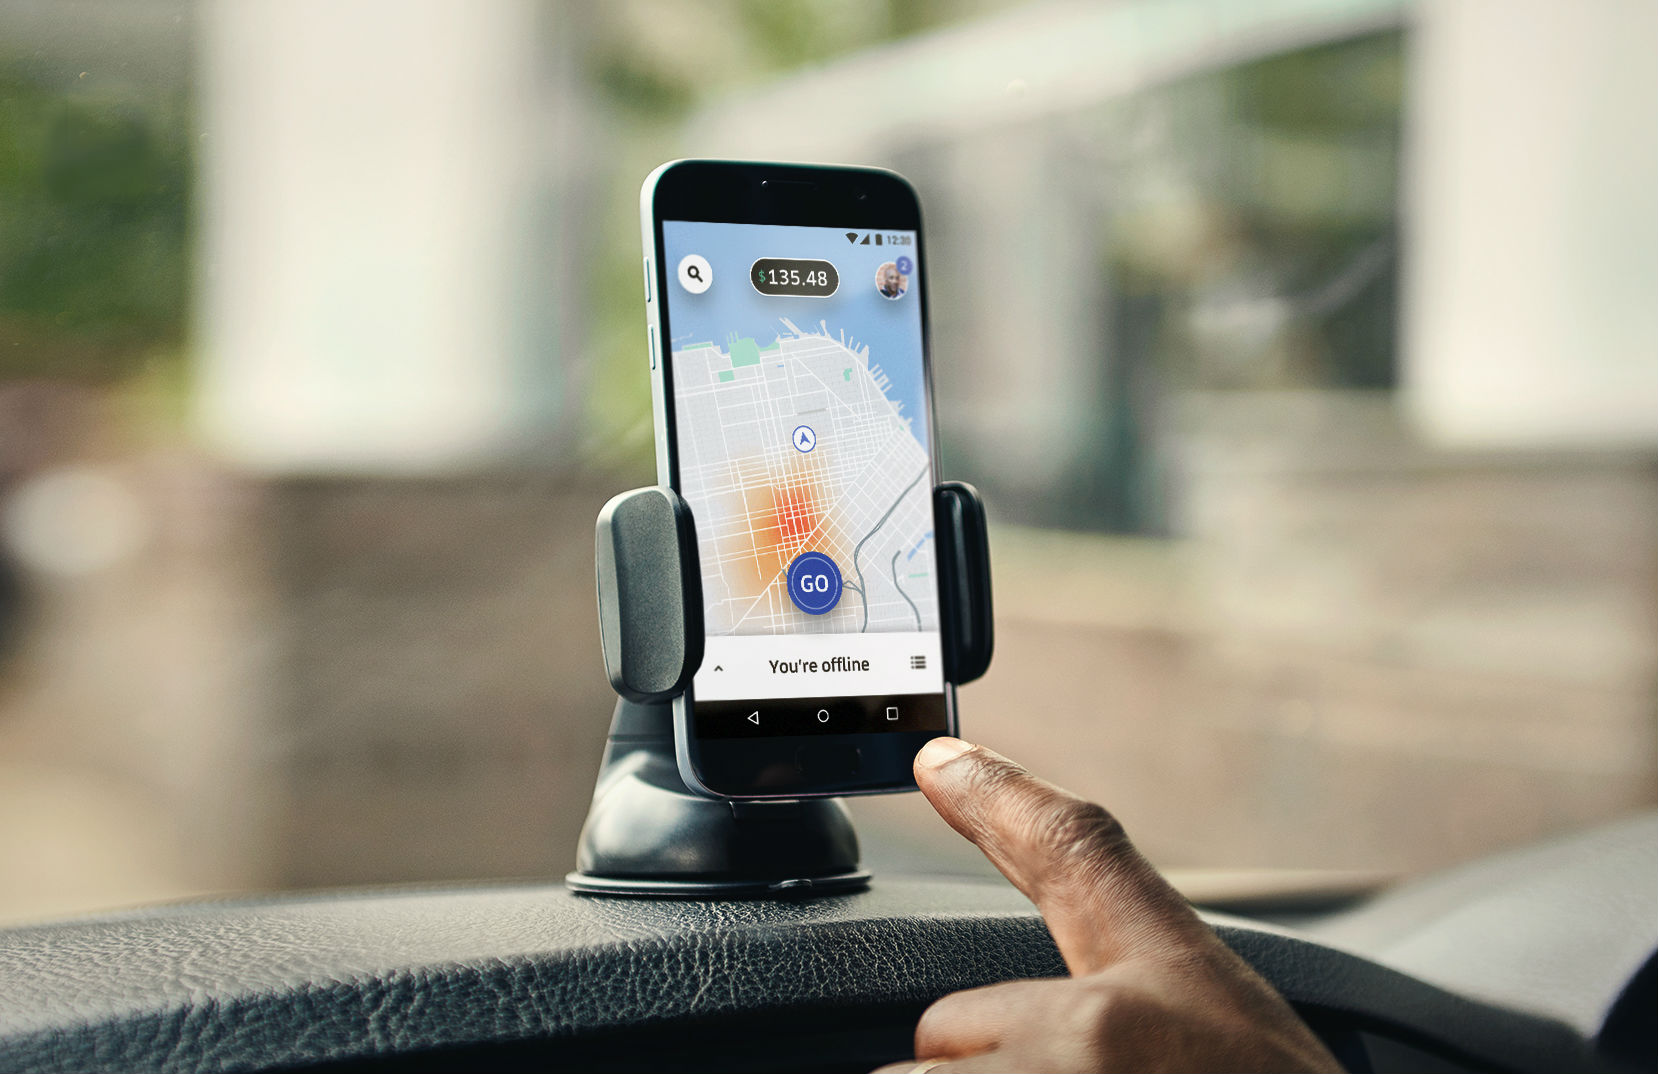 Uber resiste à lei da Califórnia que obriga registro de motoristas como funcionários